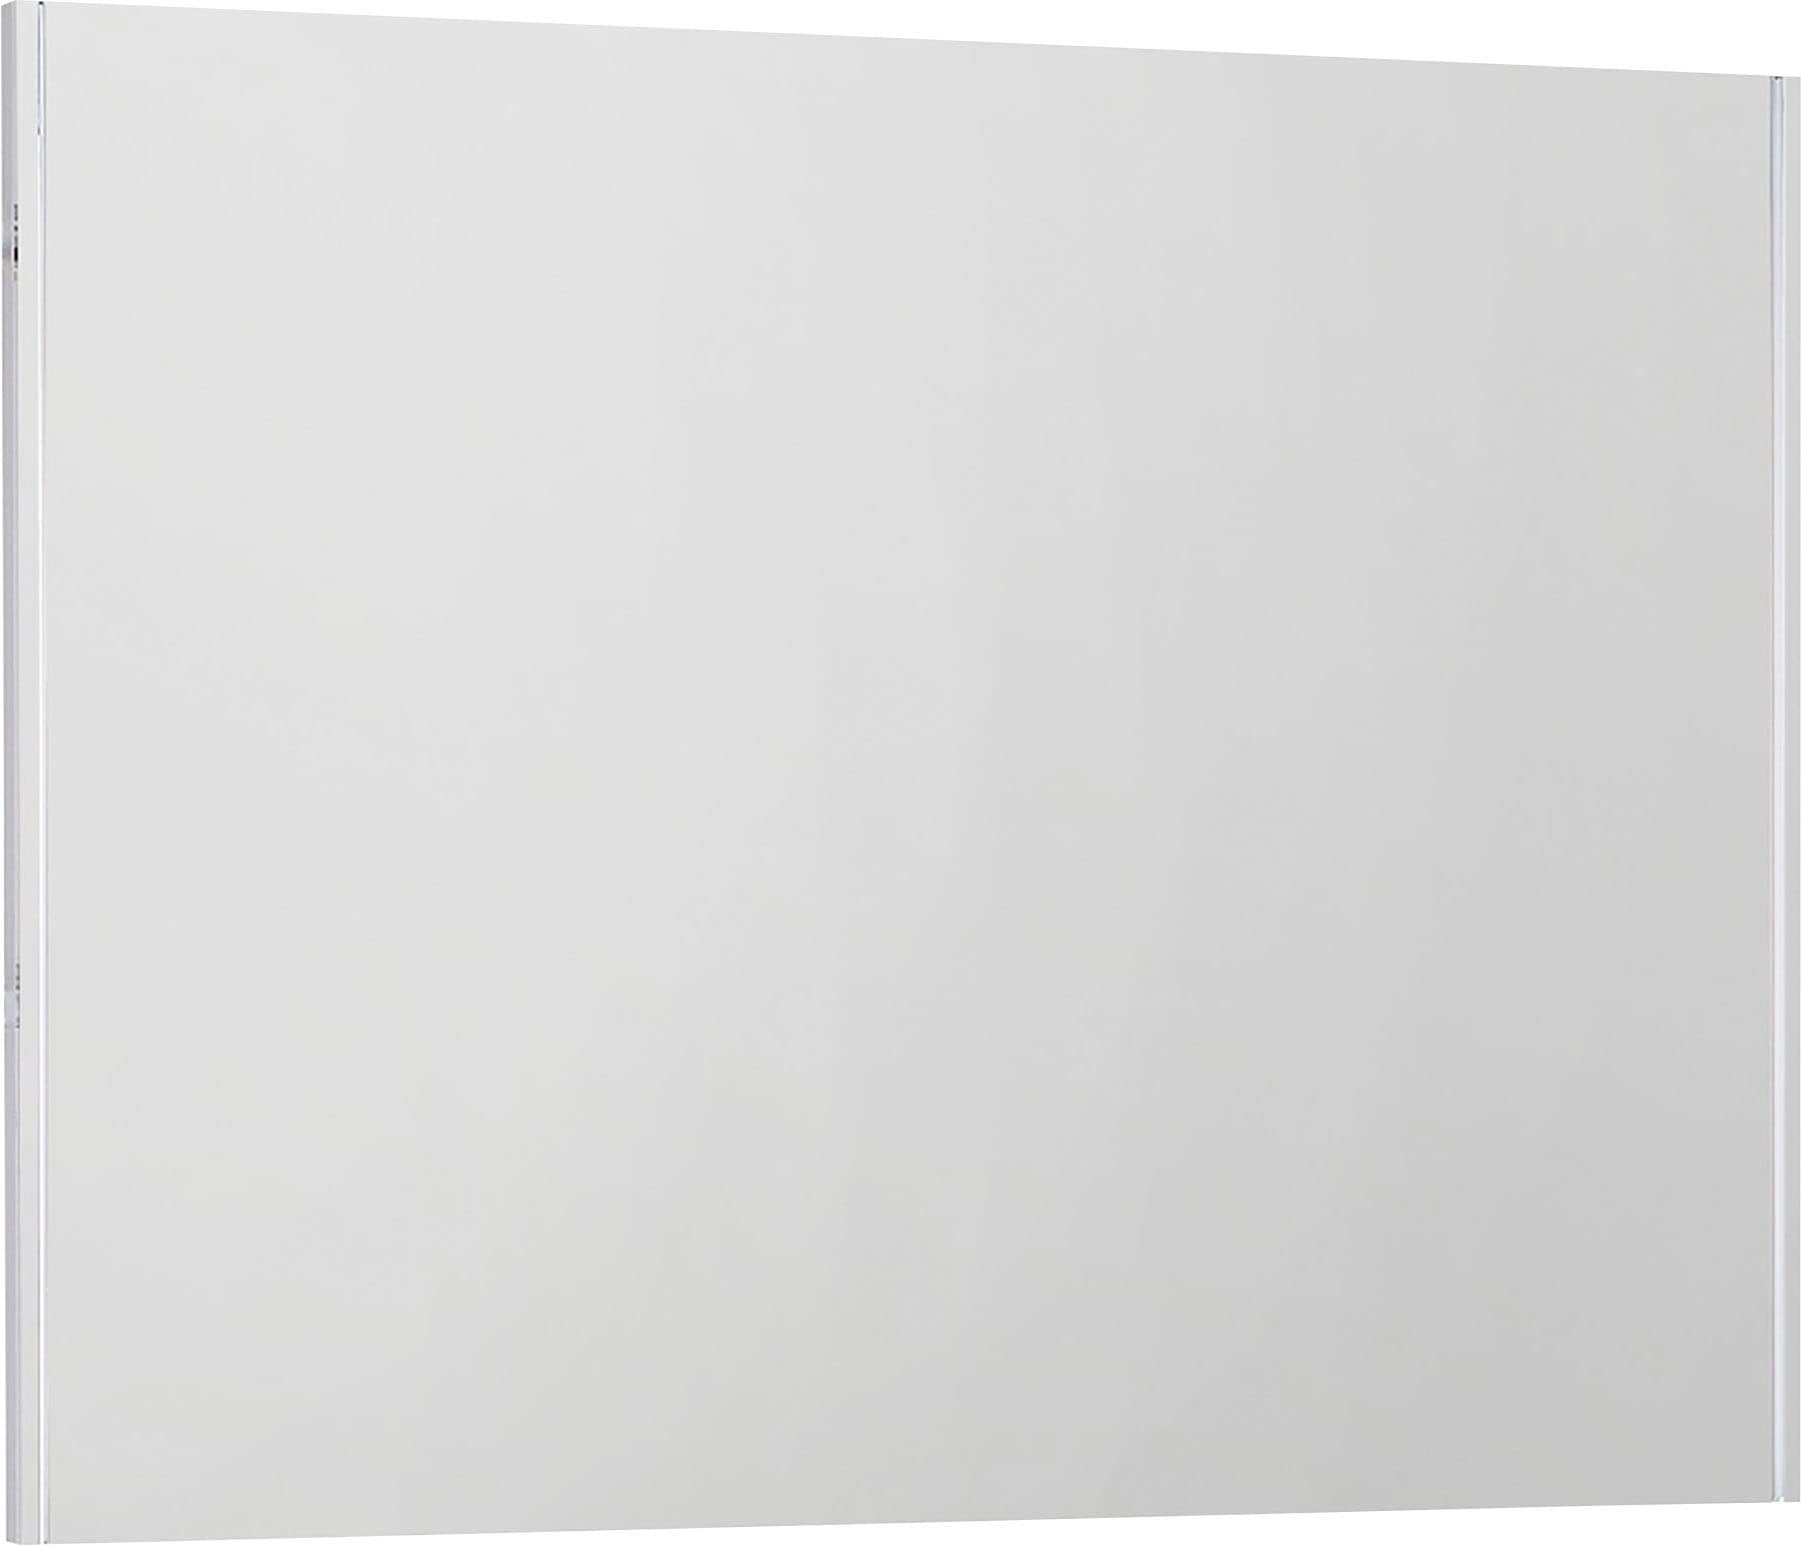 MARLIN Spiegelpaneel »3040« Breite 90 cm